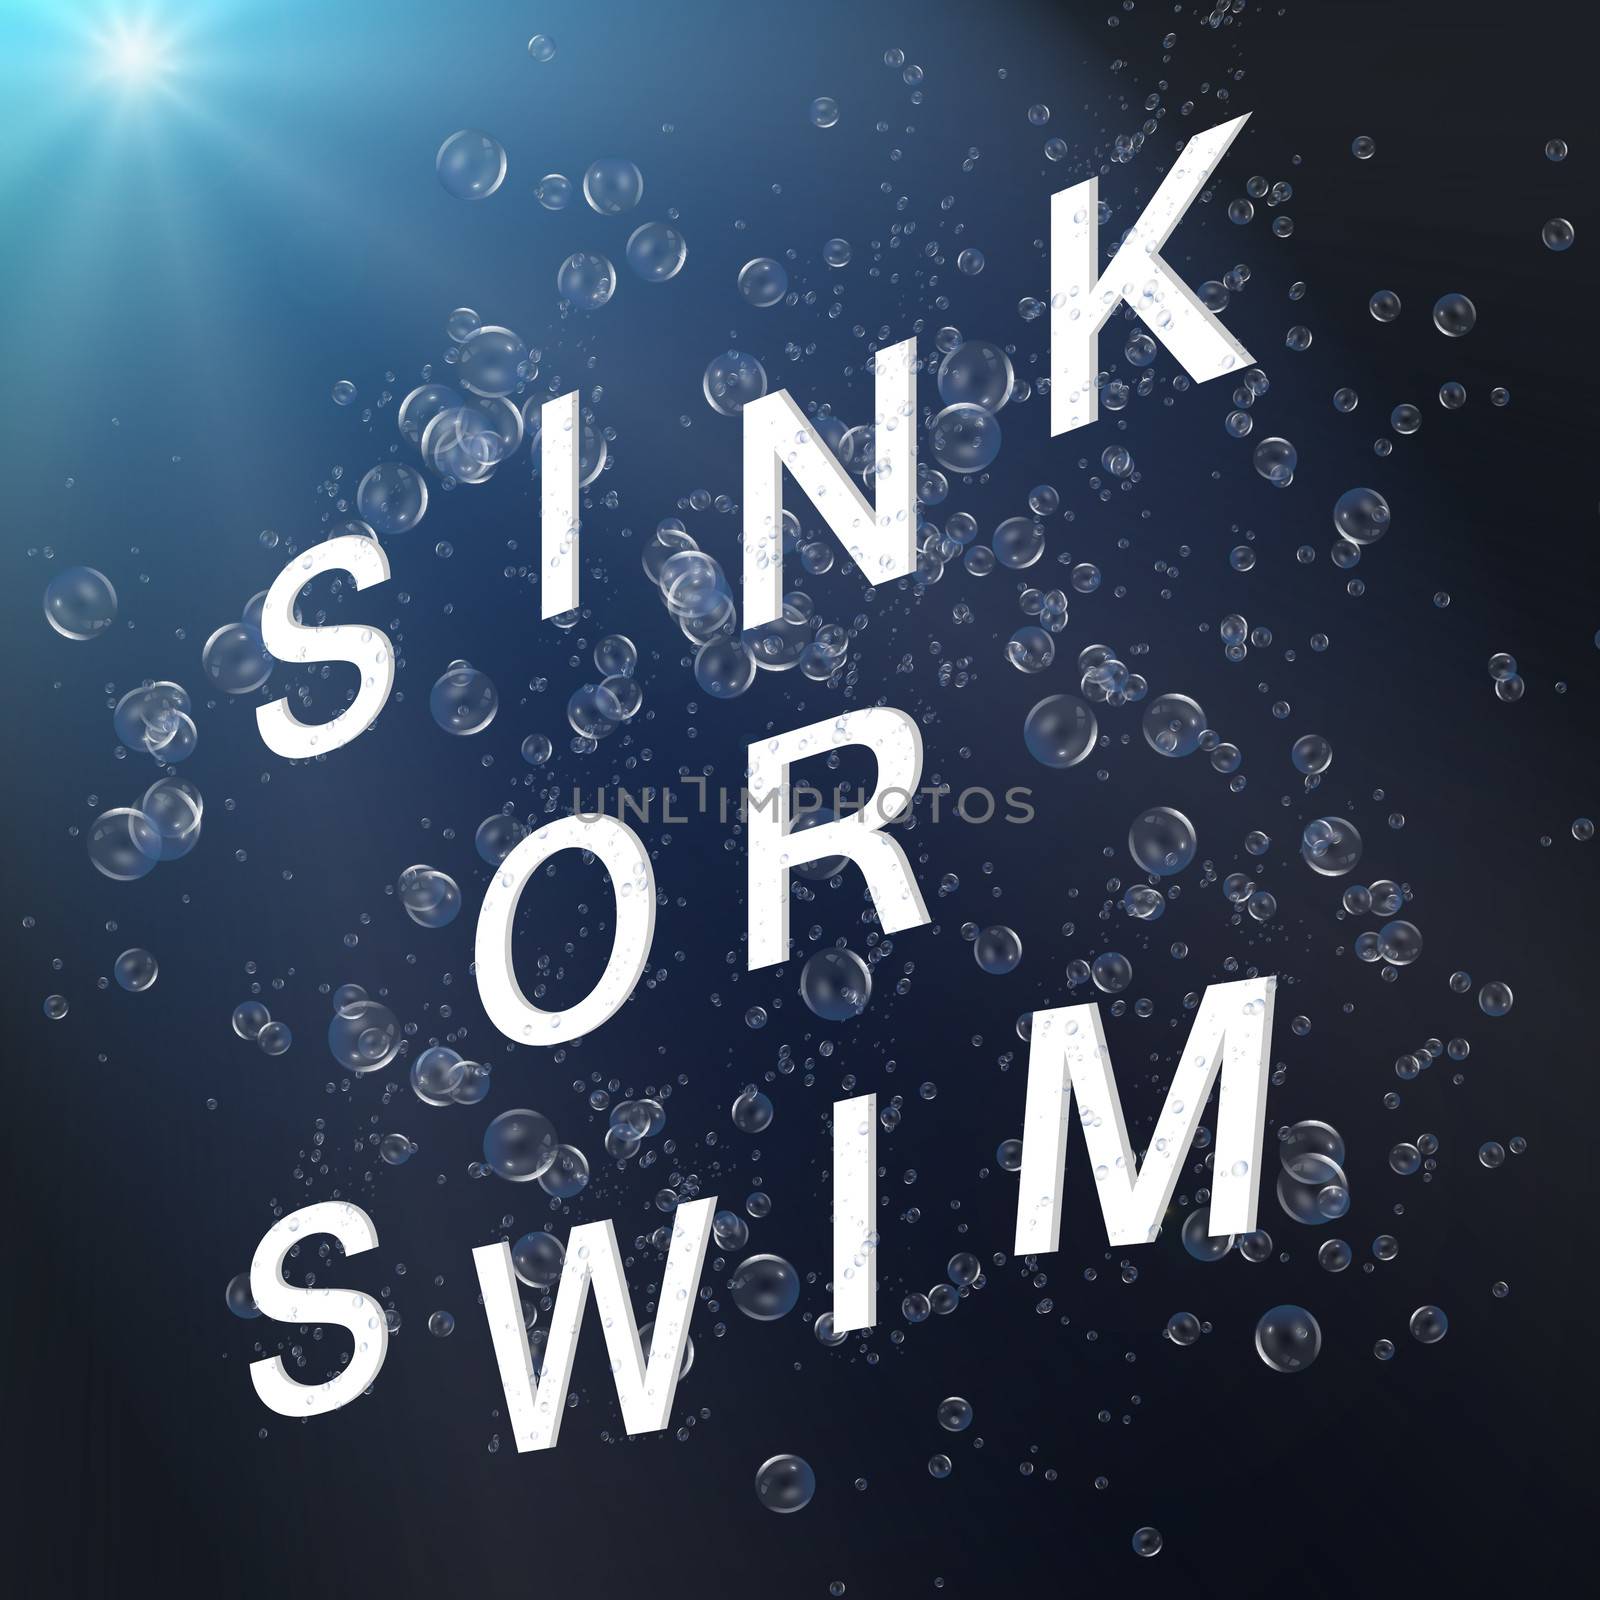 Sink or swim. by 72soul